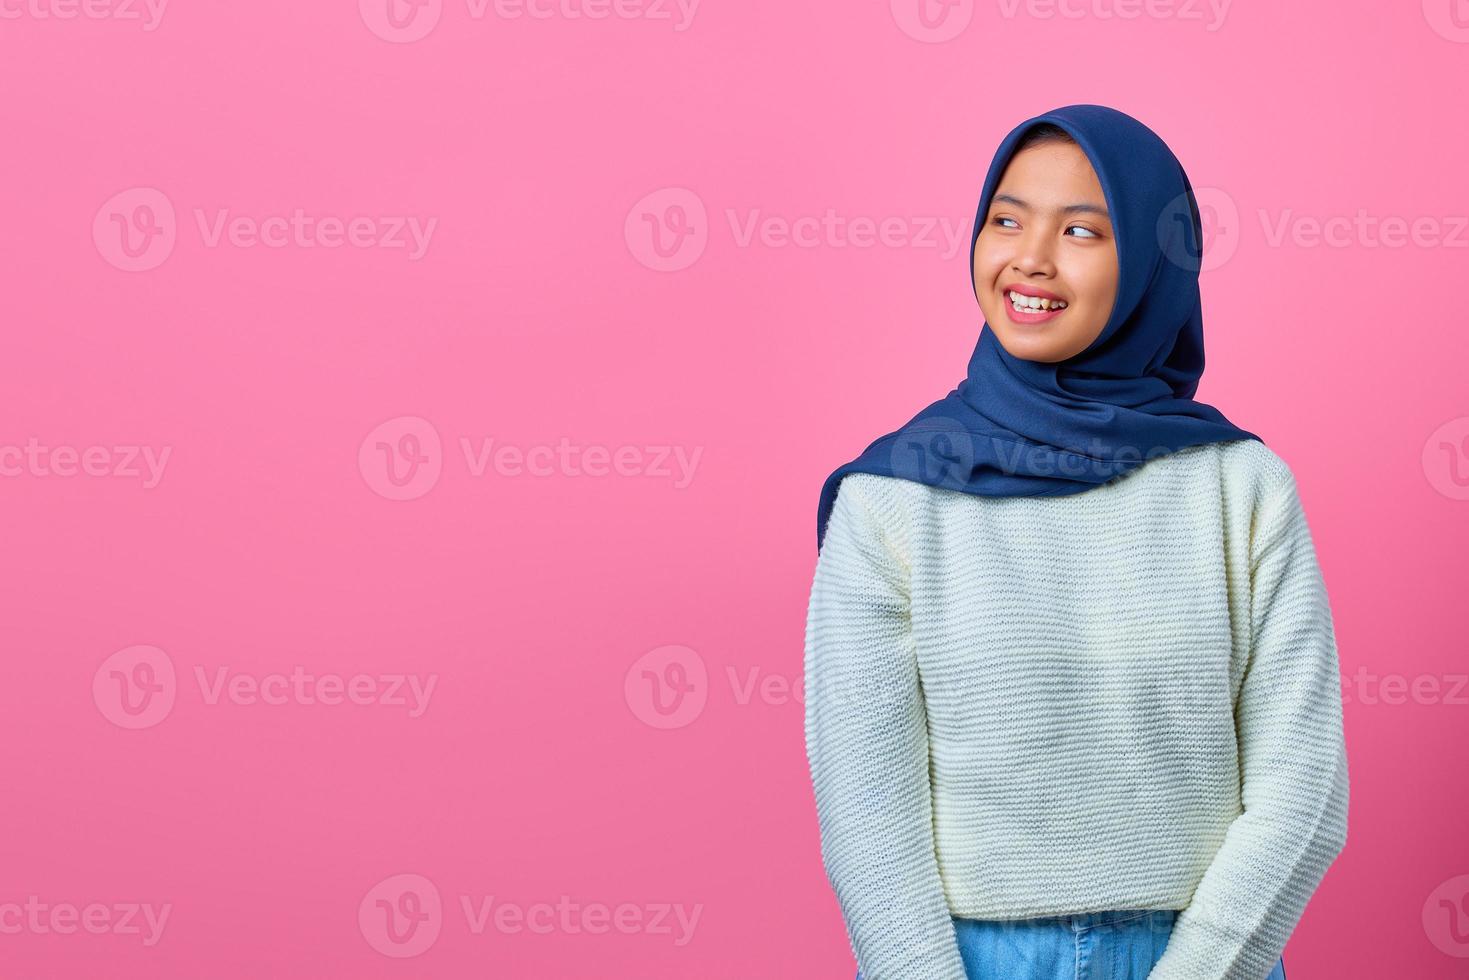 retrato de uma jovem asiática sorridente, olhando para o outro lado no fundo rosa foto